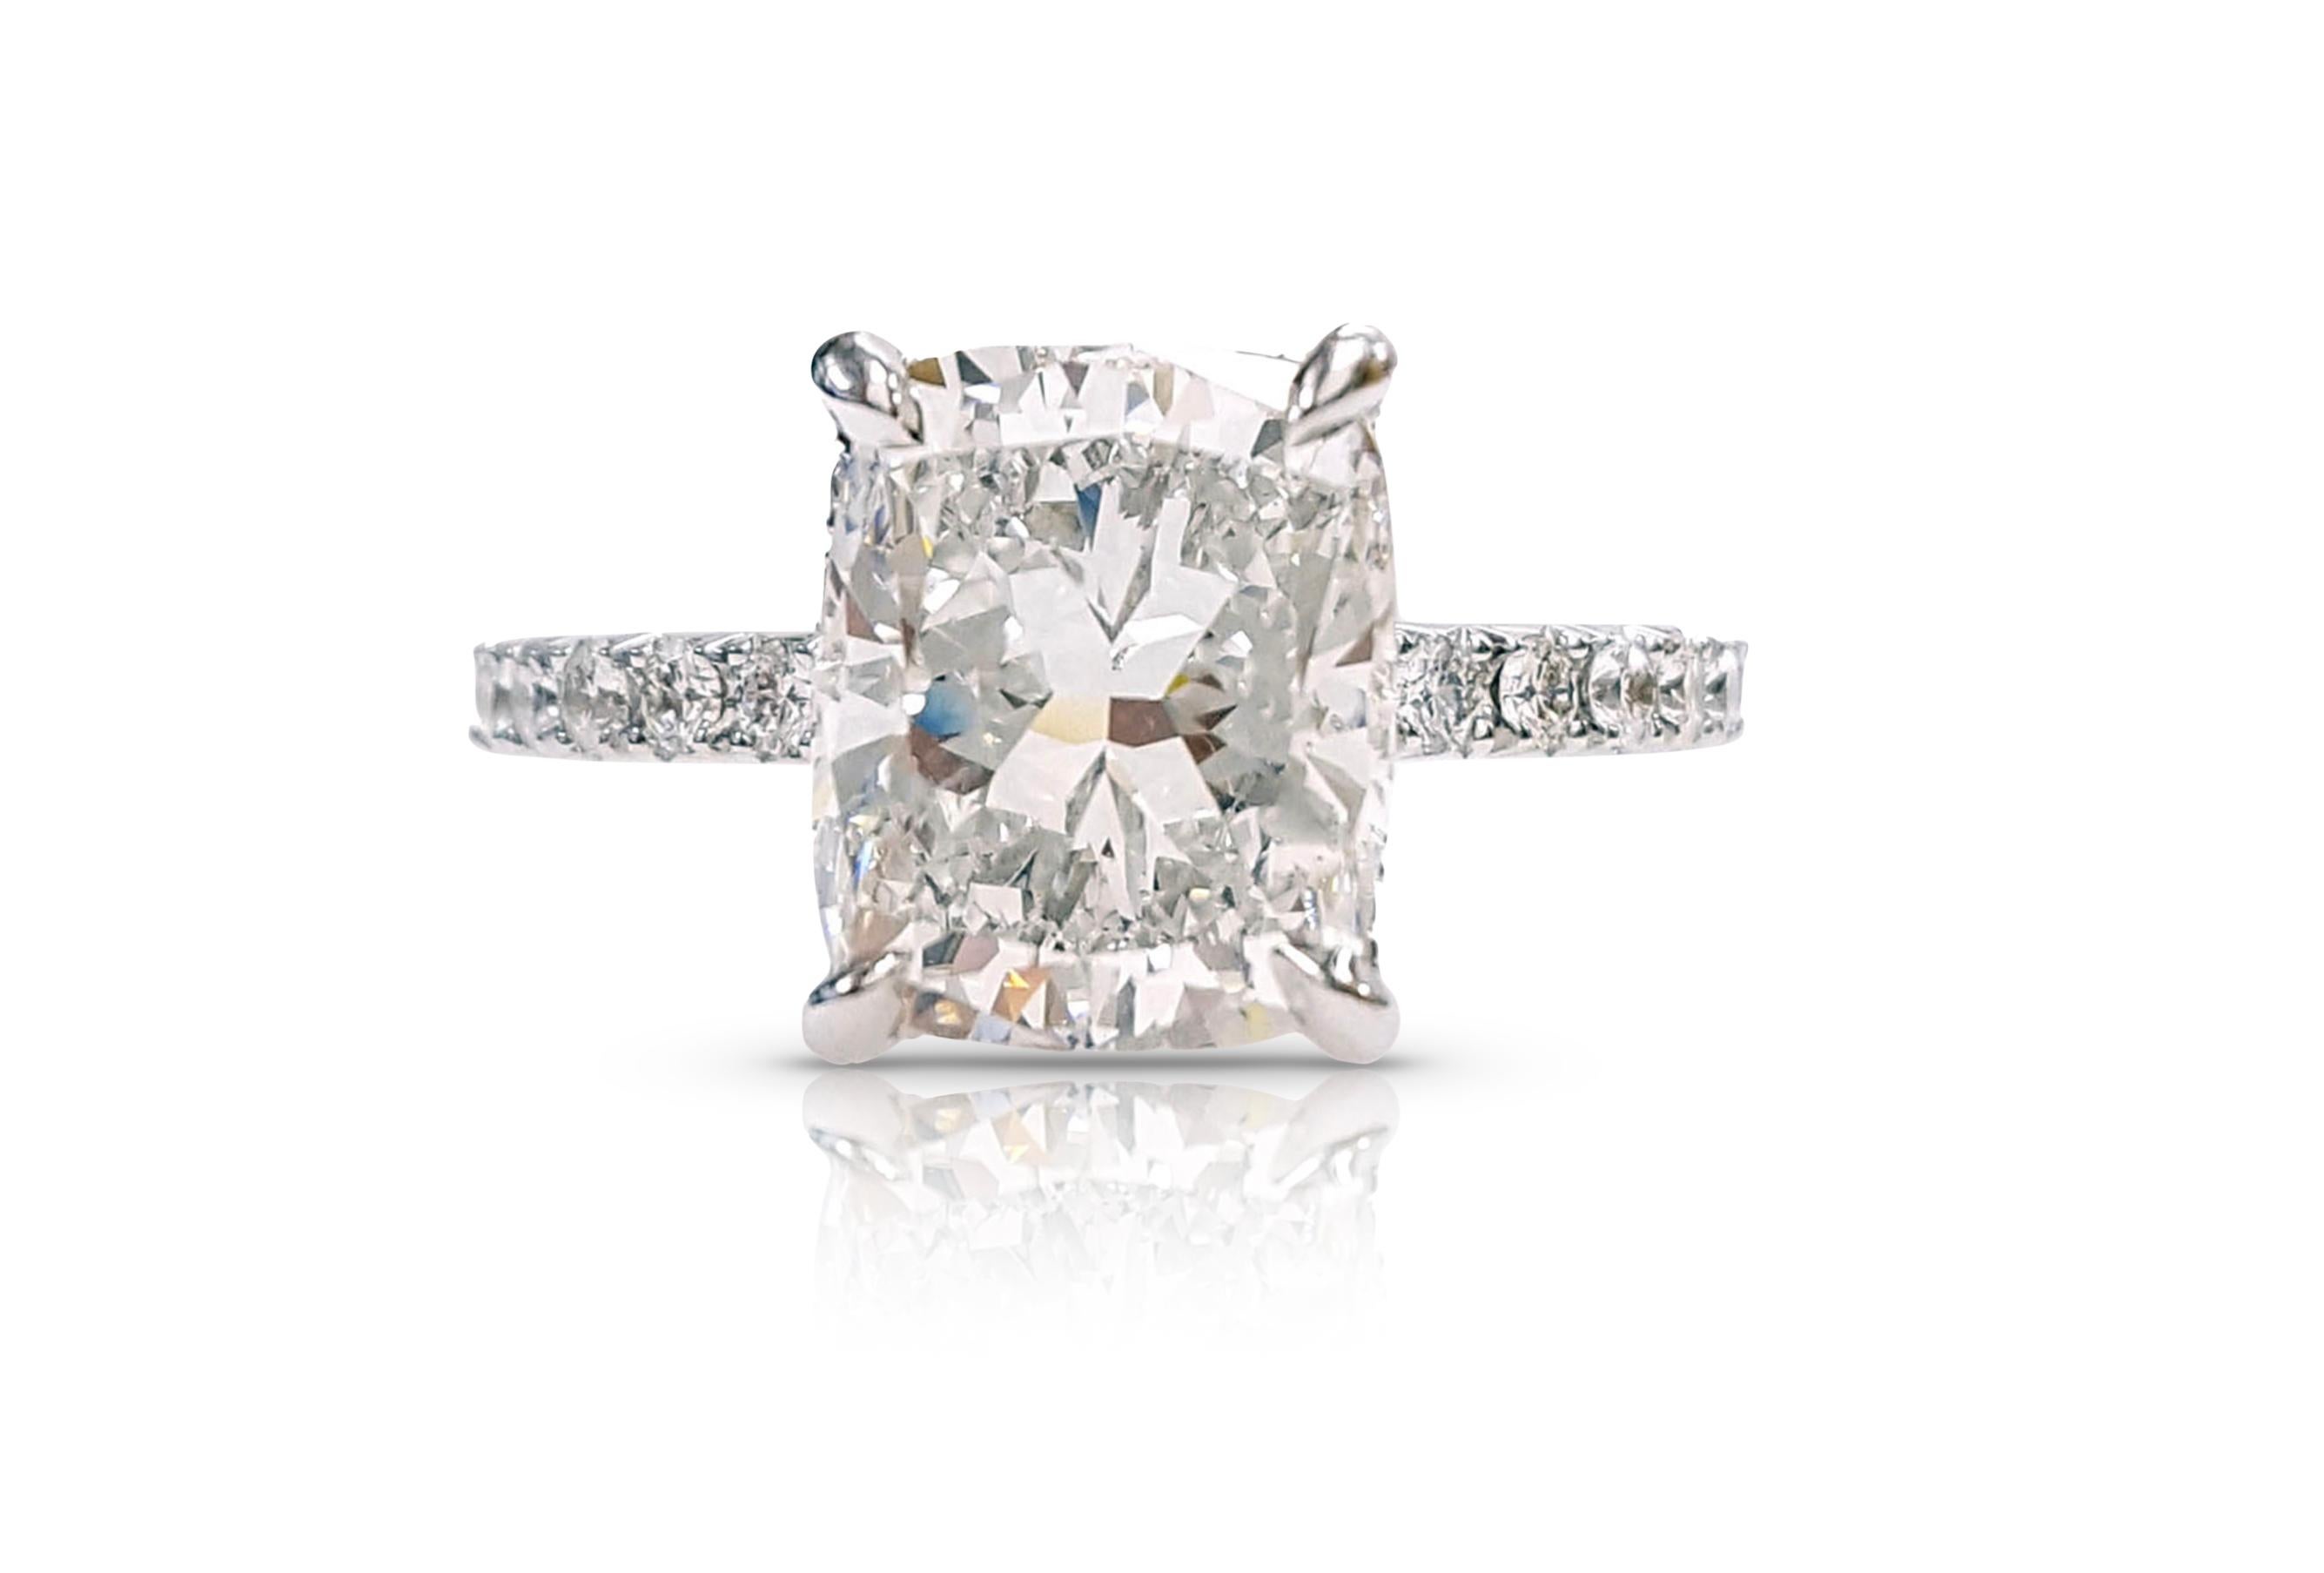 Ein klassischer 3,01 Karat Diamant im Kissenschliff, Verlobungsring, zertifiziert von GIA als F Farbe, SI2 Klarheit. Das klassische Design unterstreicht die Schönheit des Mittelsteins mit den ihn umgebenden 42 runden weißen Brillanten, die dem